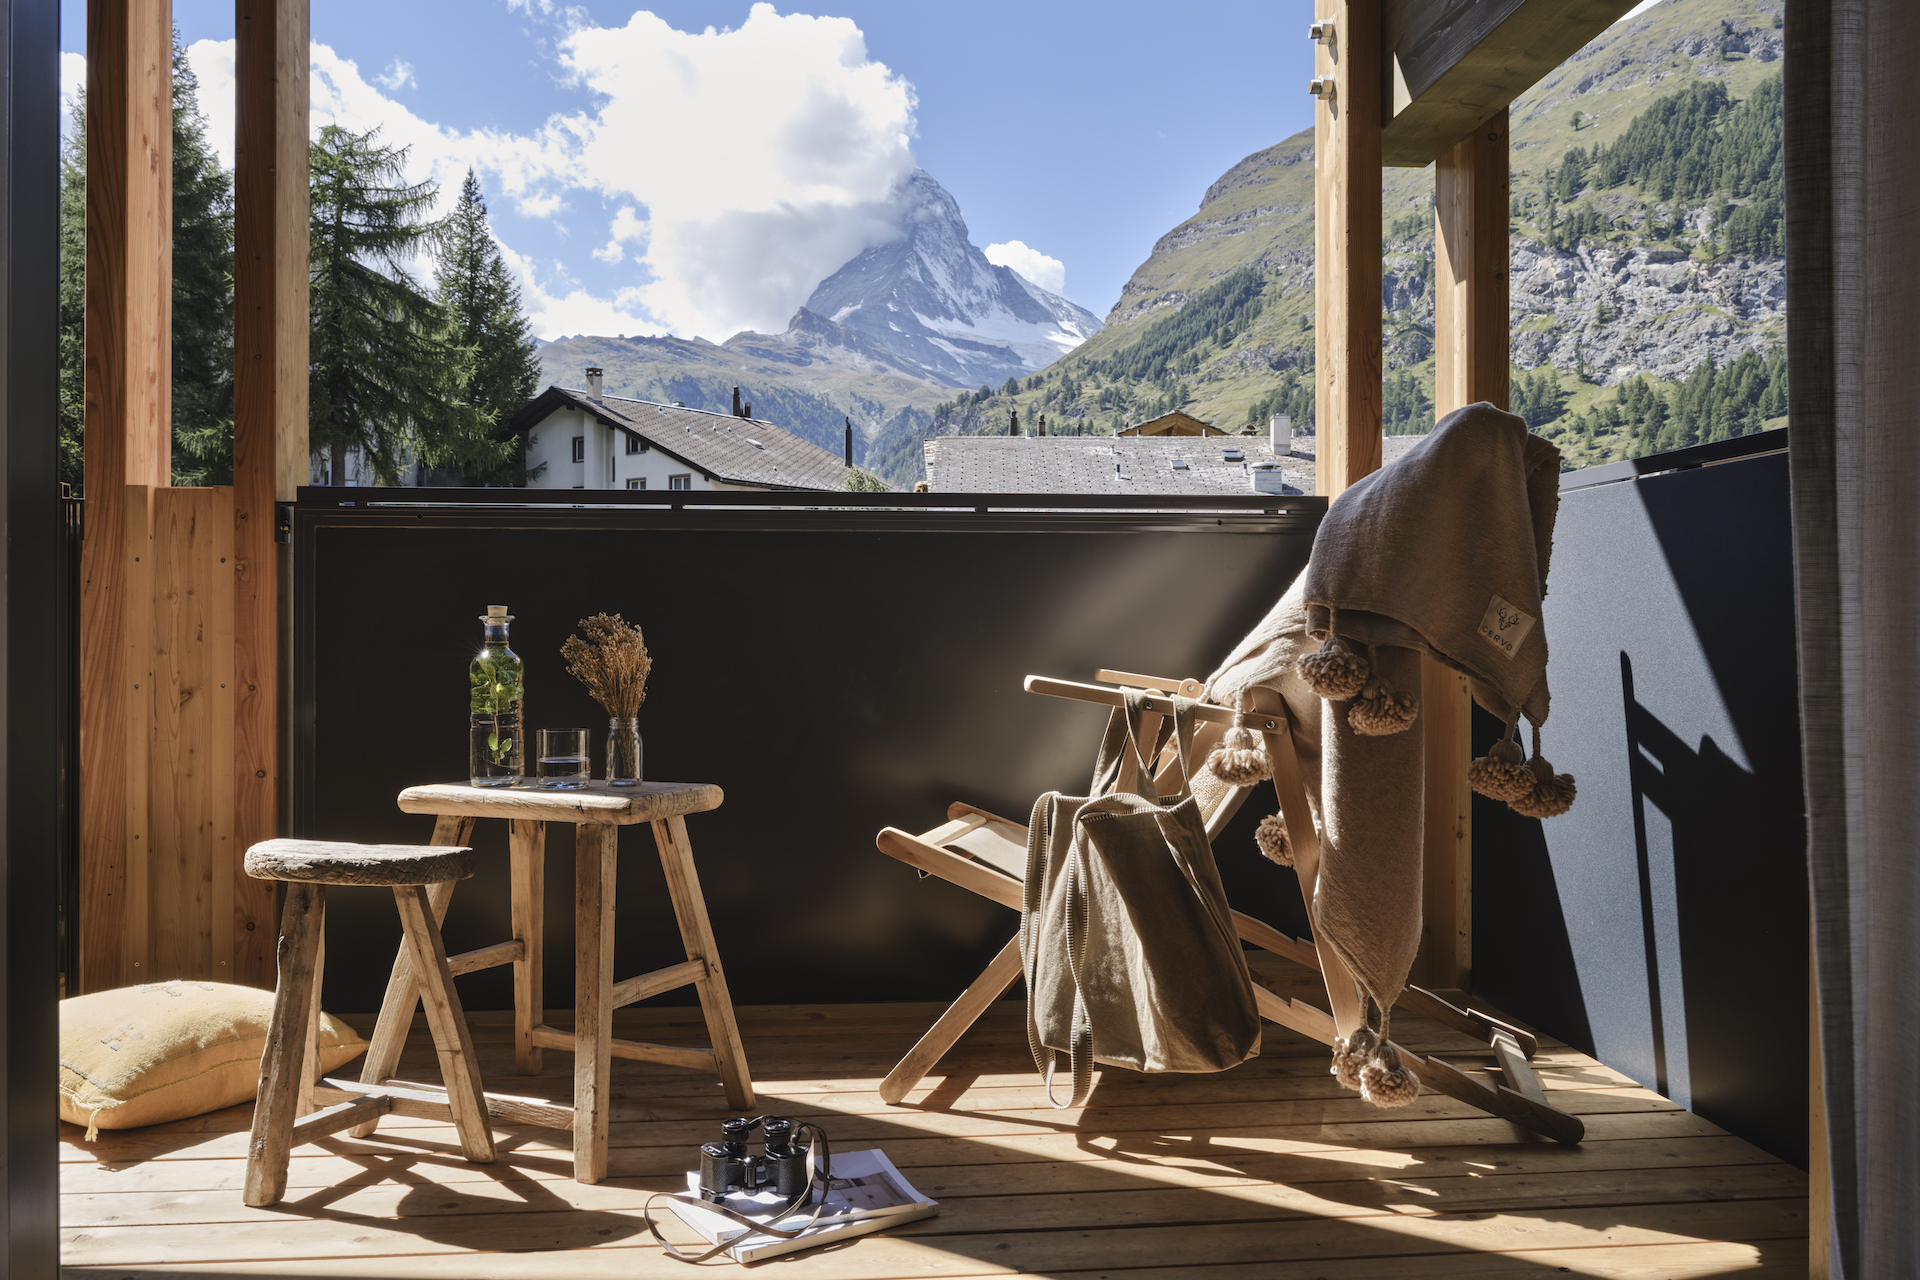 Balkon des Nomad Zimmers mit Blick auf das Matterhorn